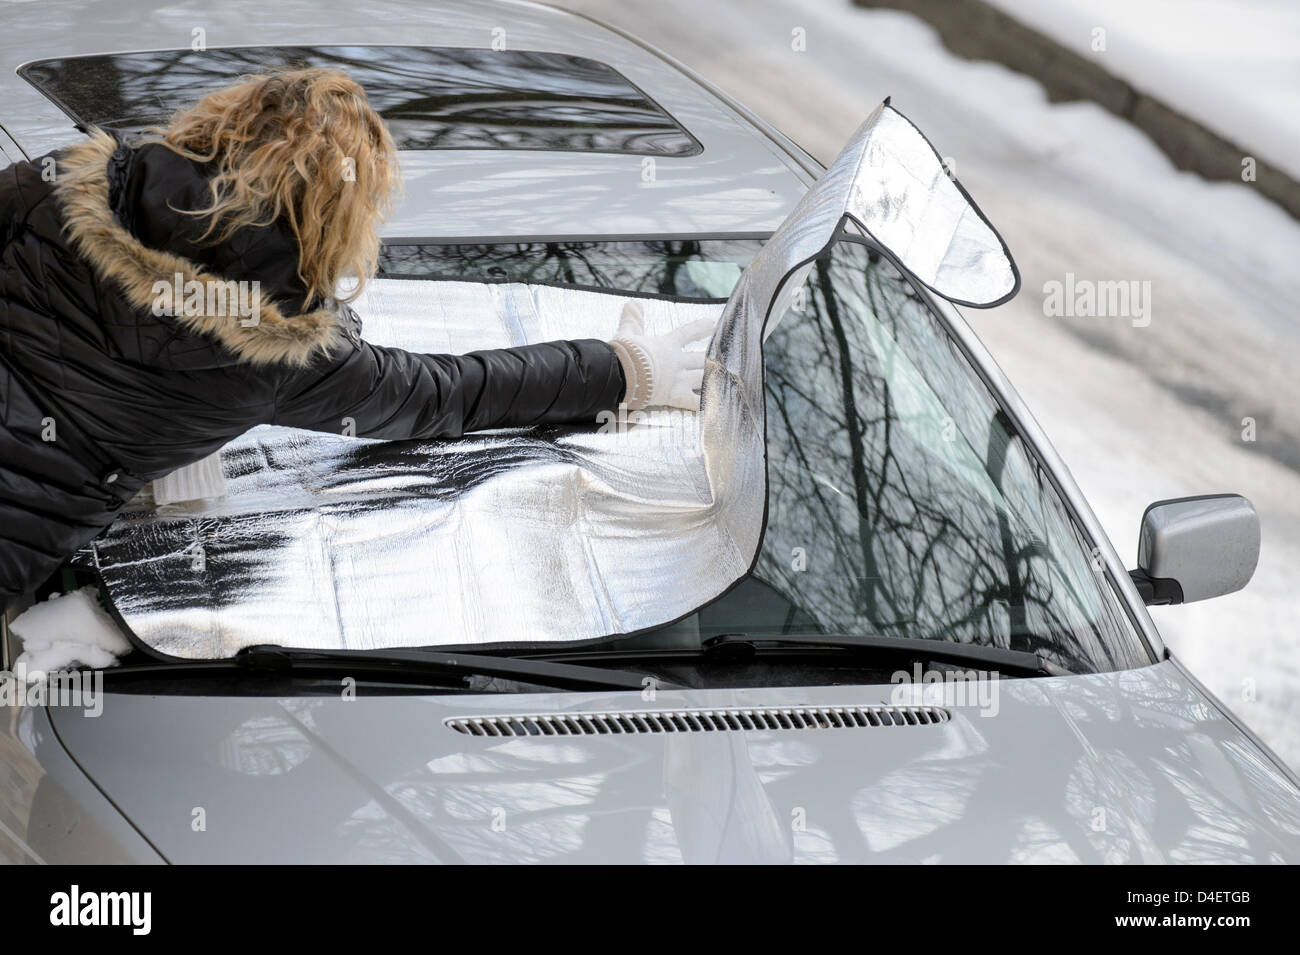 Une femme met une bache antigel sur le pare-brise d'une voiture Photo Stock  - Alamy